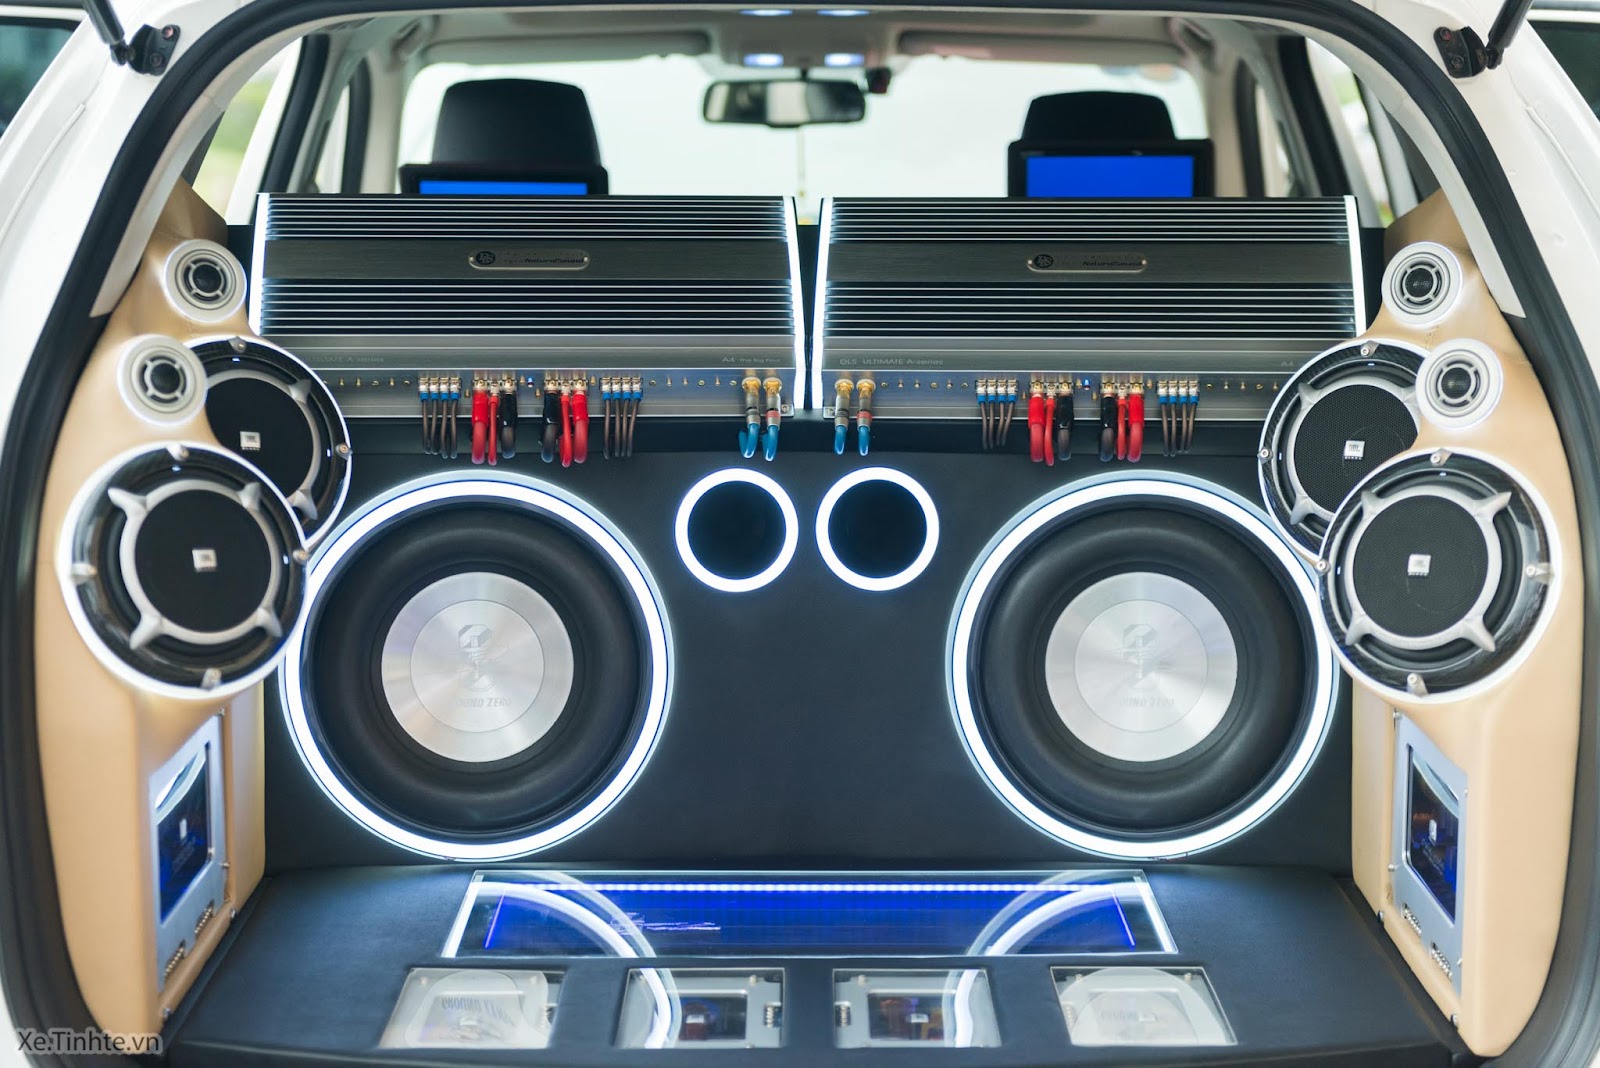 Hệ thống loa xe hơi được độ chế thành dàn DJ mạnh mẽ phía sau xe